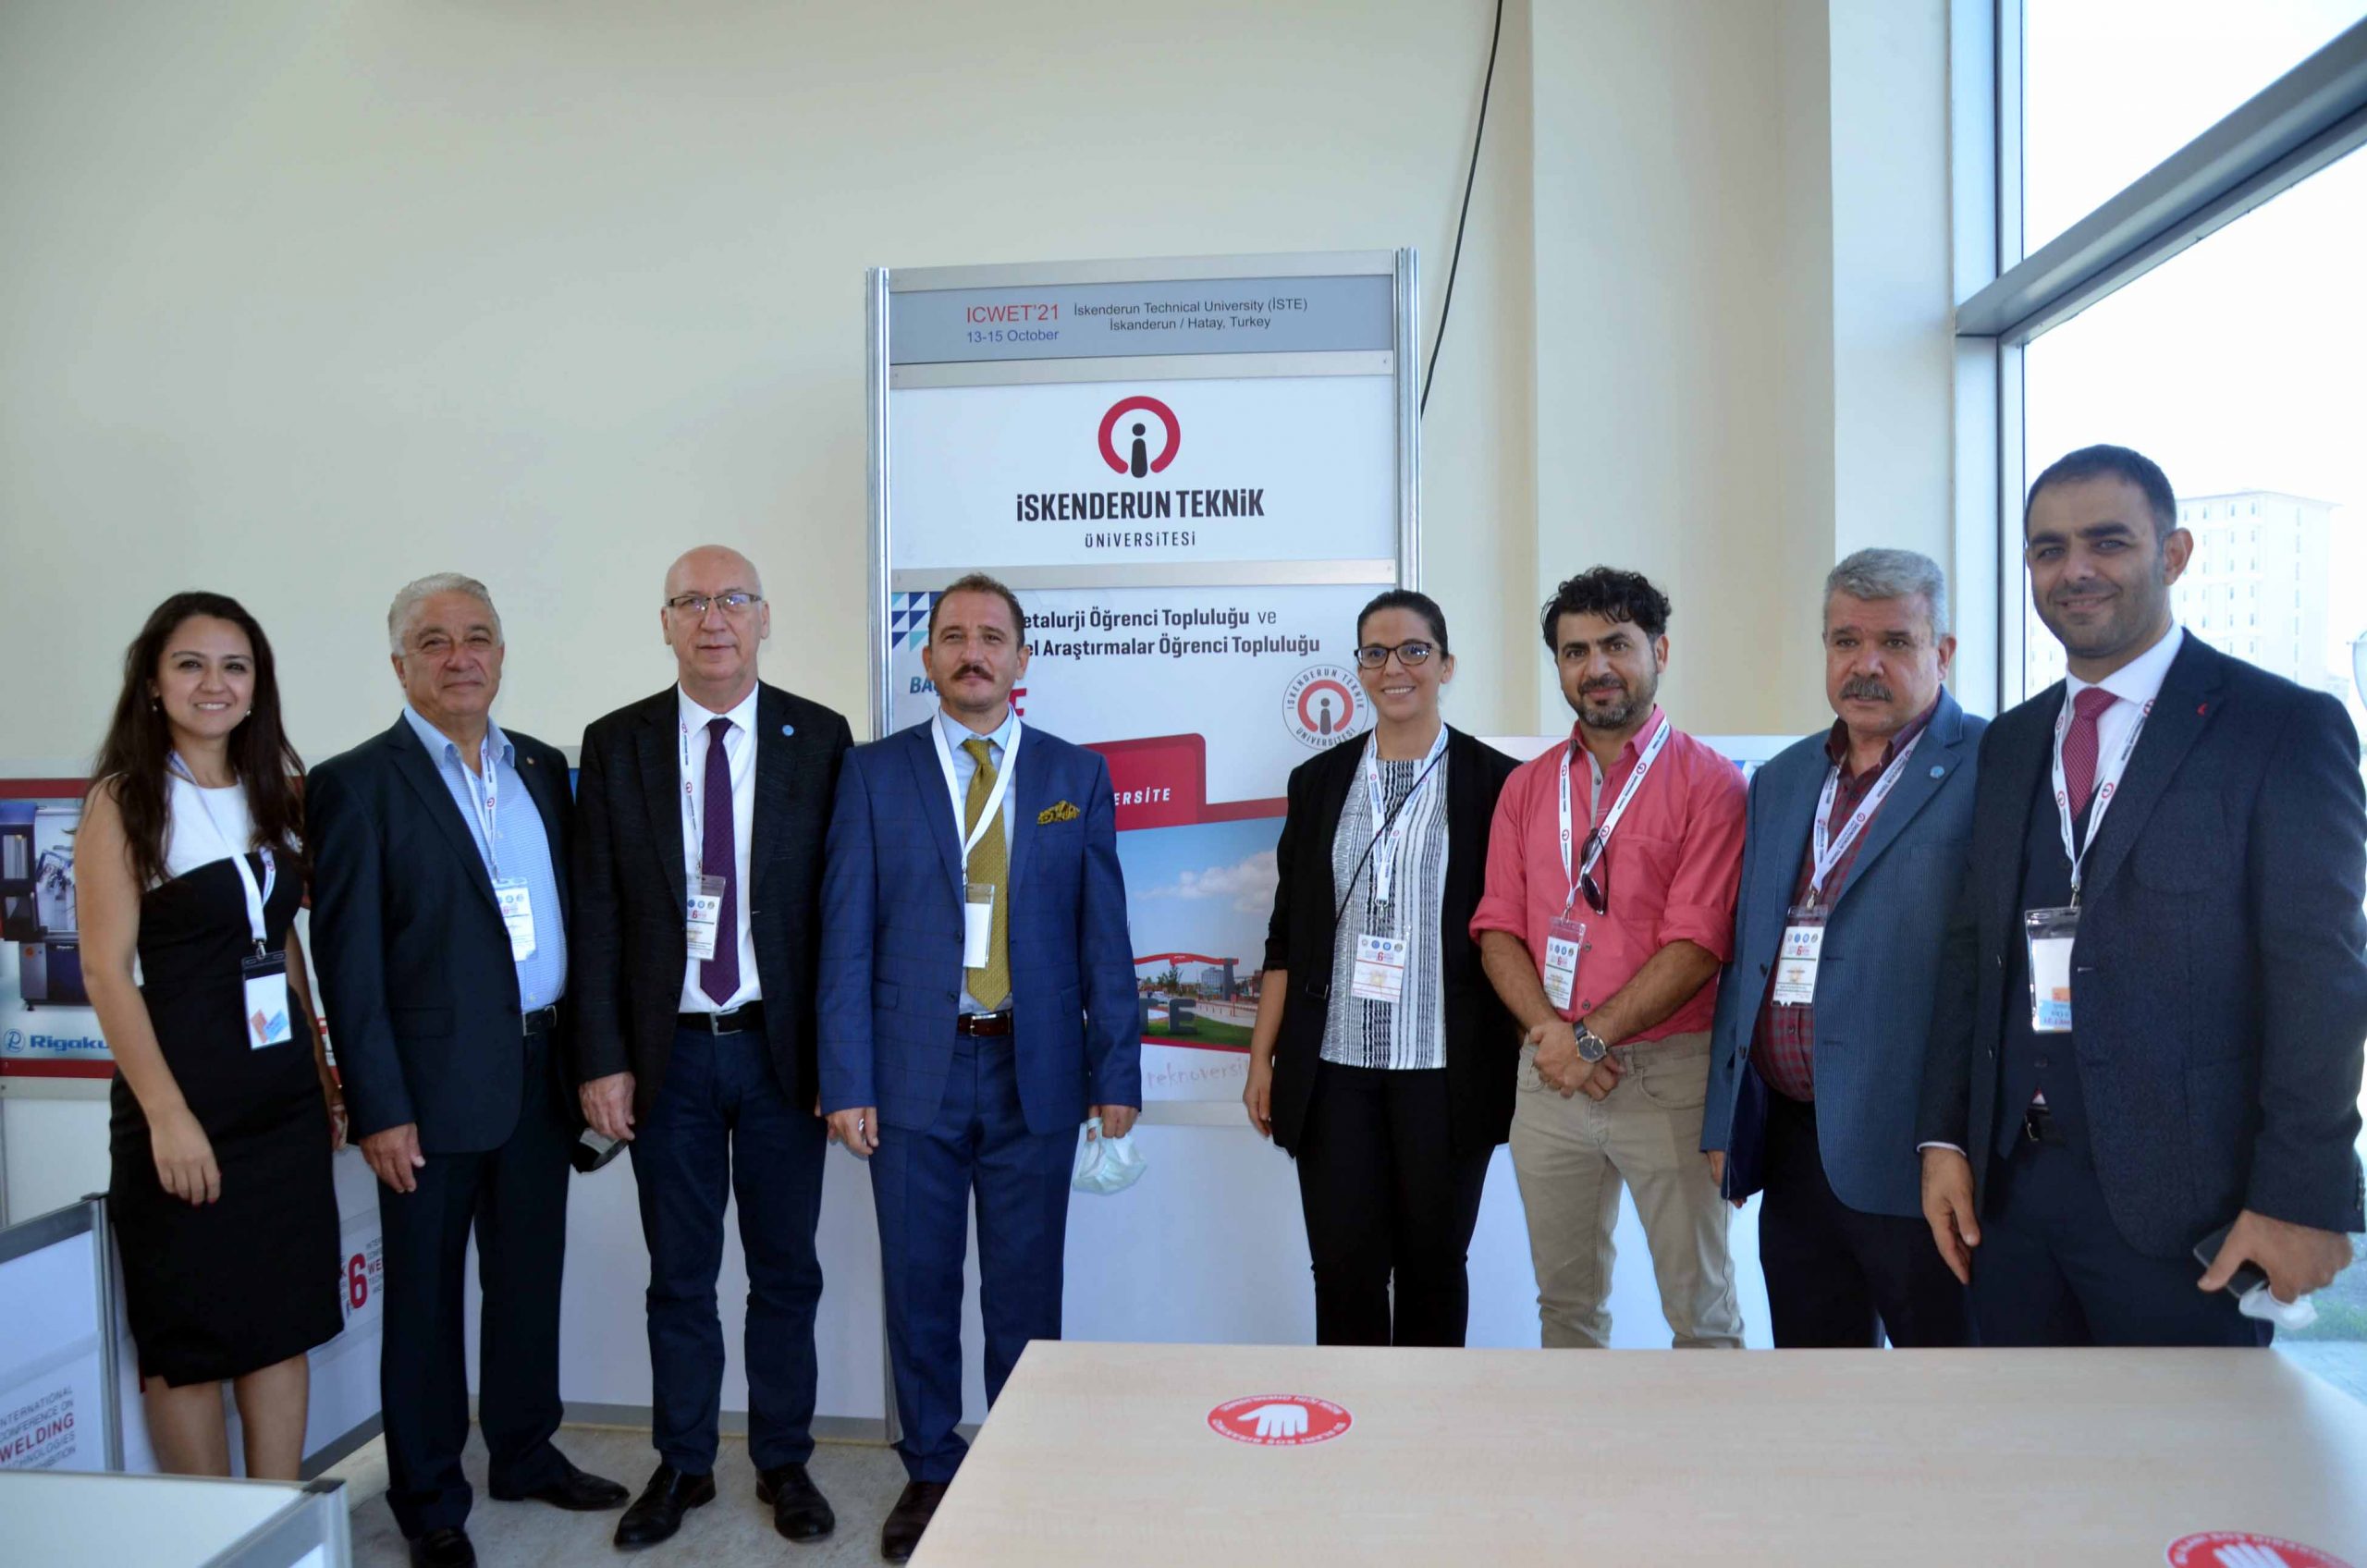 İTSO Yönetimi İskenderun Teknik Üniversitesinde Düzenlenen Uluslararası Kaynak Teknolojileri Konferansı ve Sergisine Katıldı